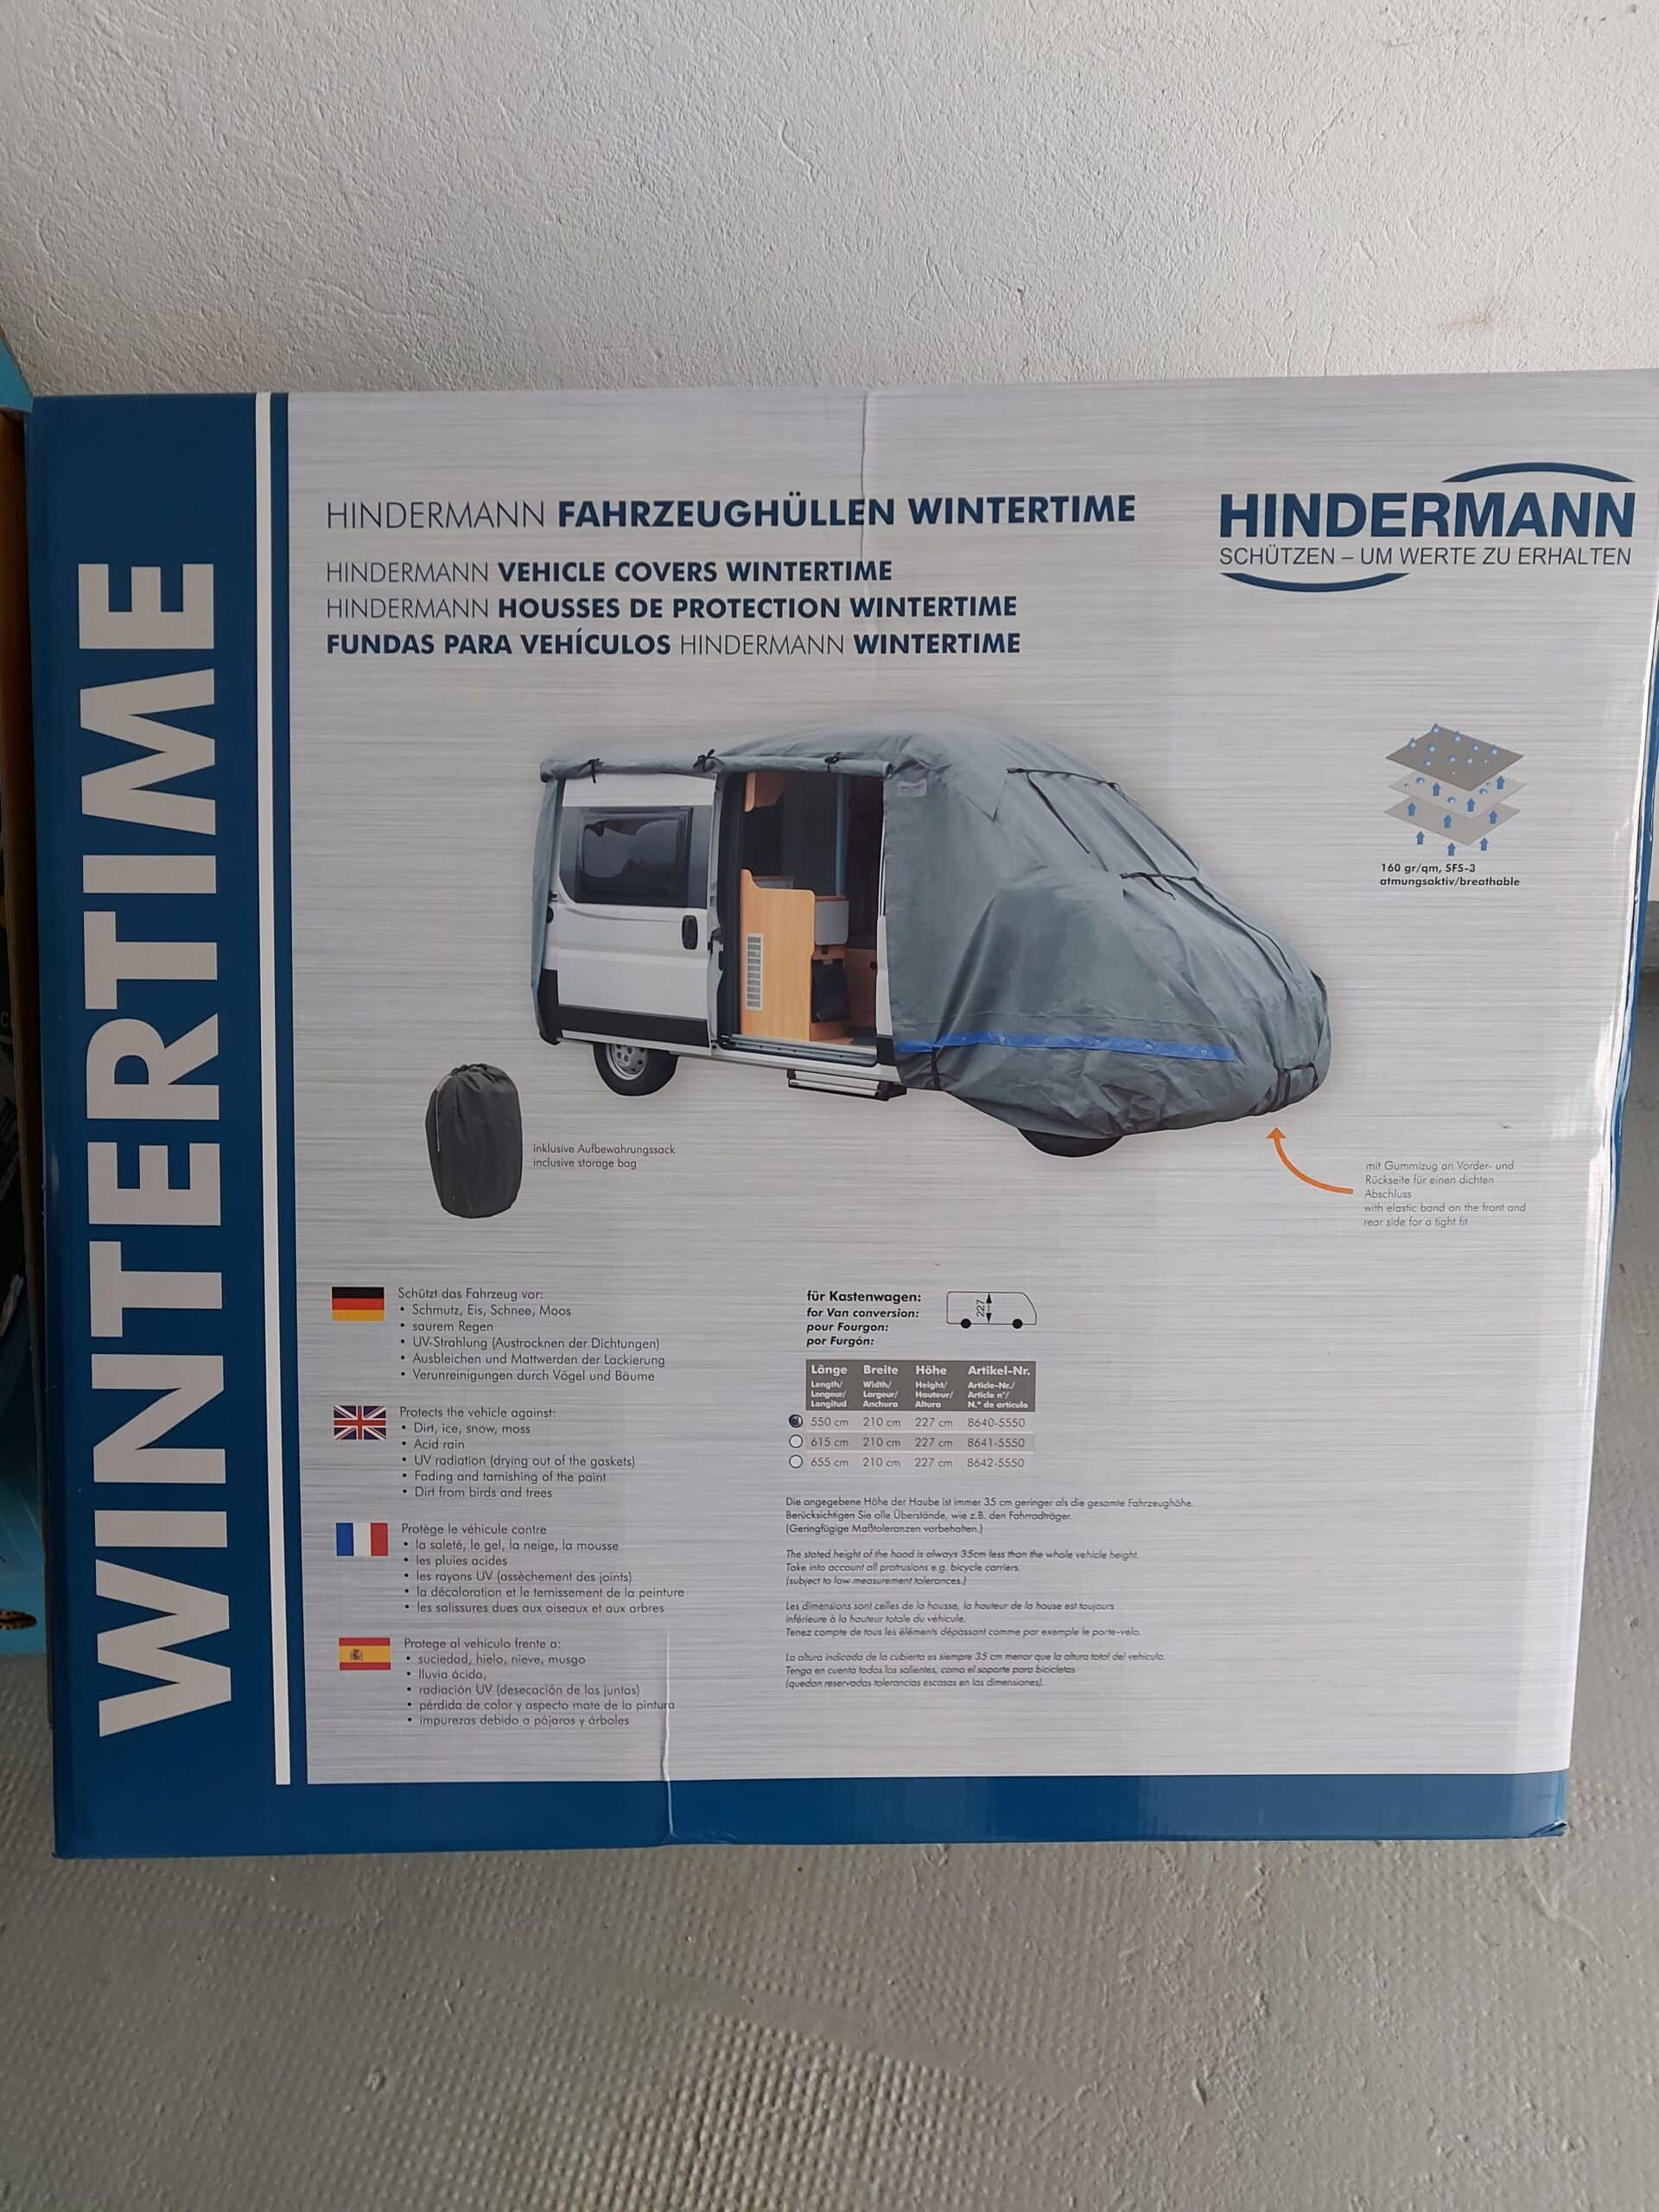 Housses de protection pour véhicule Hindermann Wintertime.